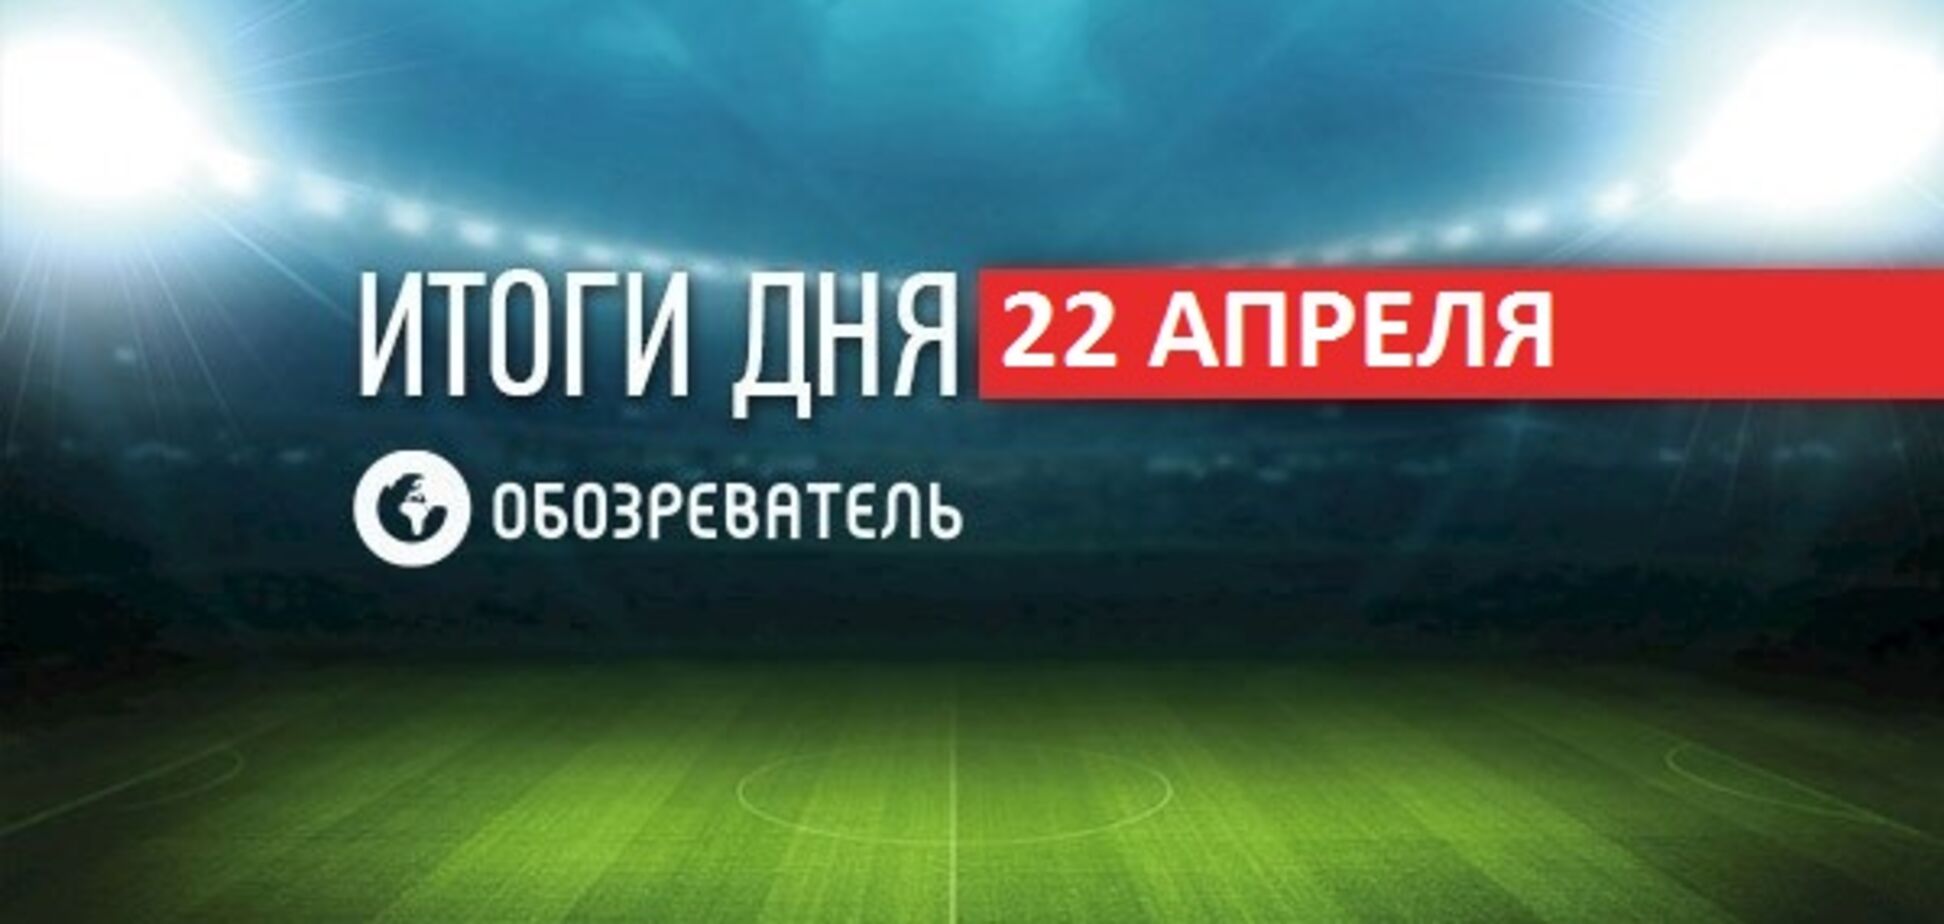 На фаната 'Шахтера' завели дело из-за флага 'Новороссии': спортивные итоги 22 апреля